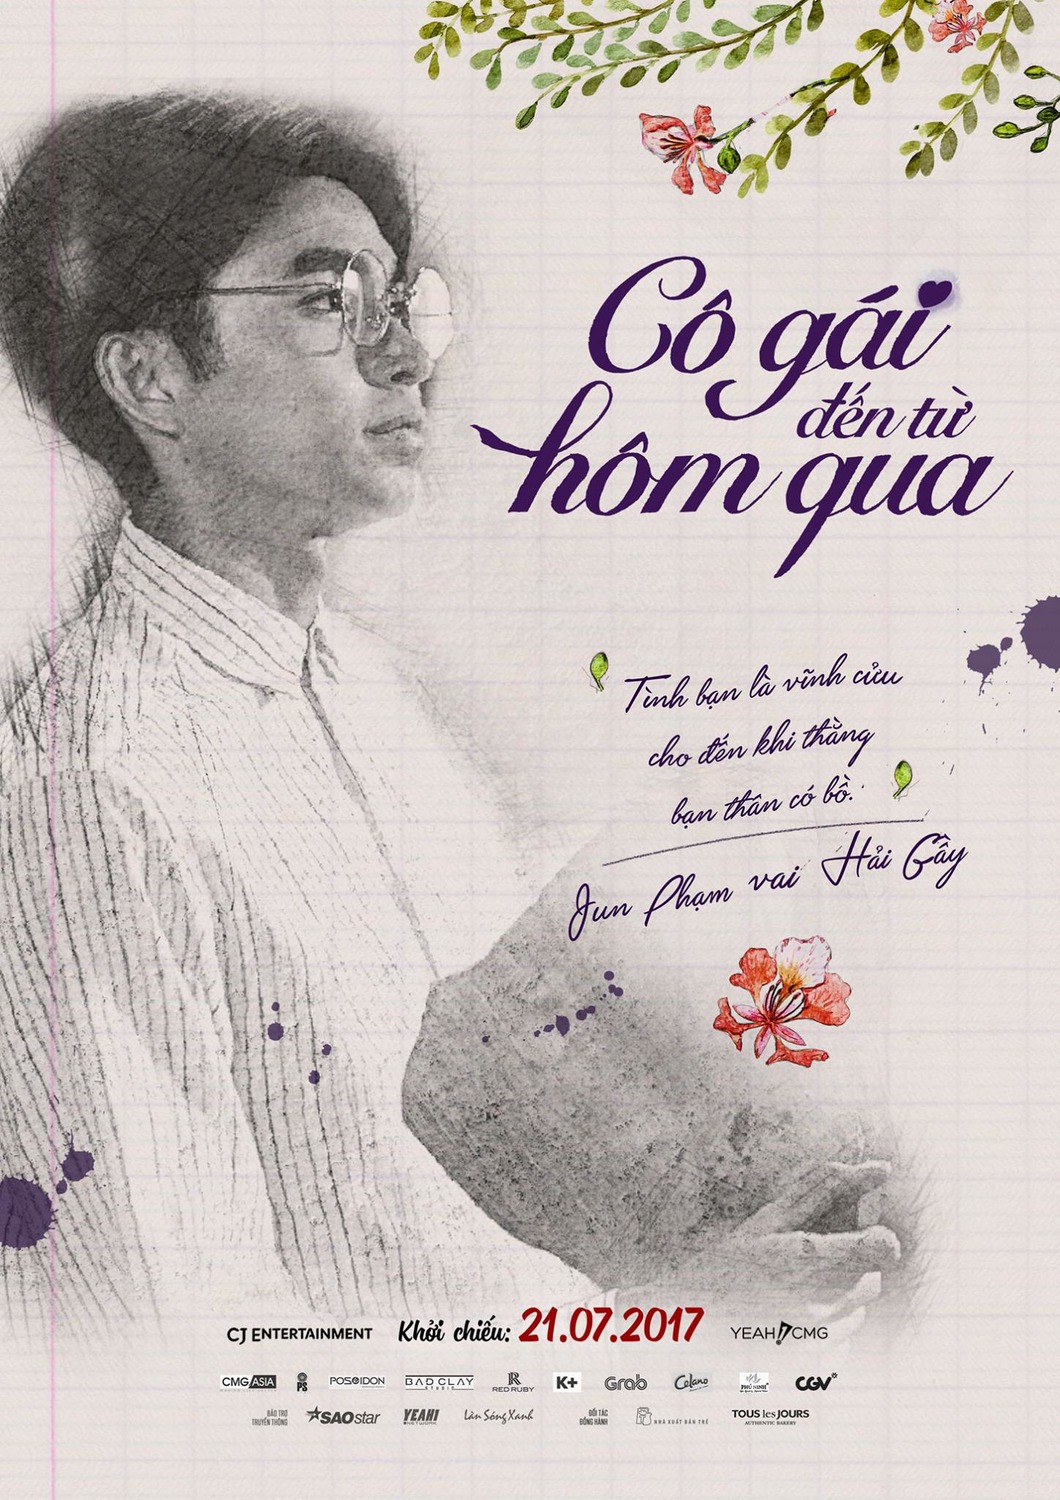 Extra Large Movie Poster Image for Co gai den tu hom qua (#14 of 14)